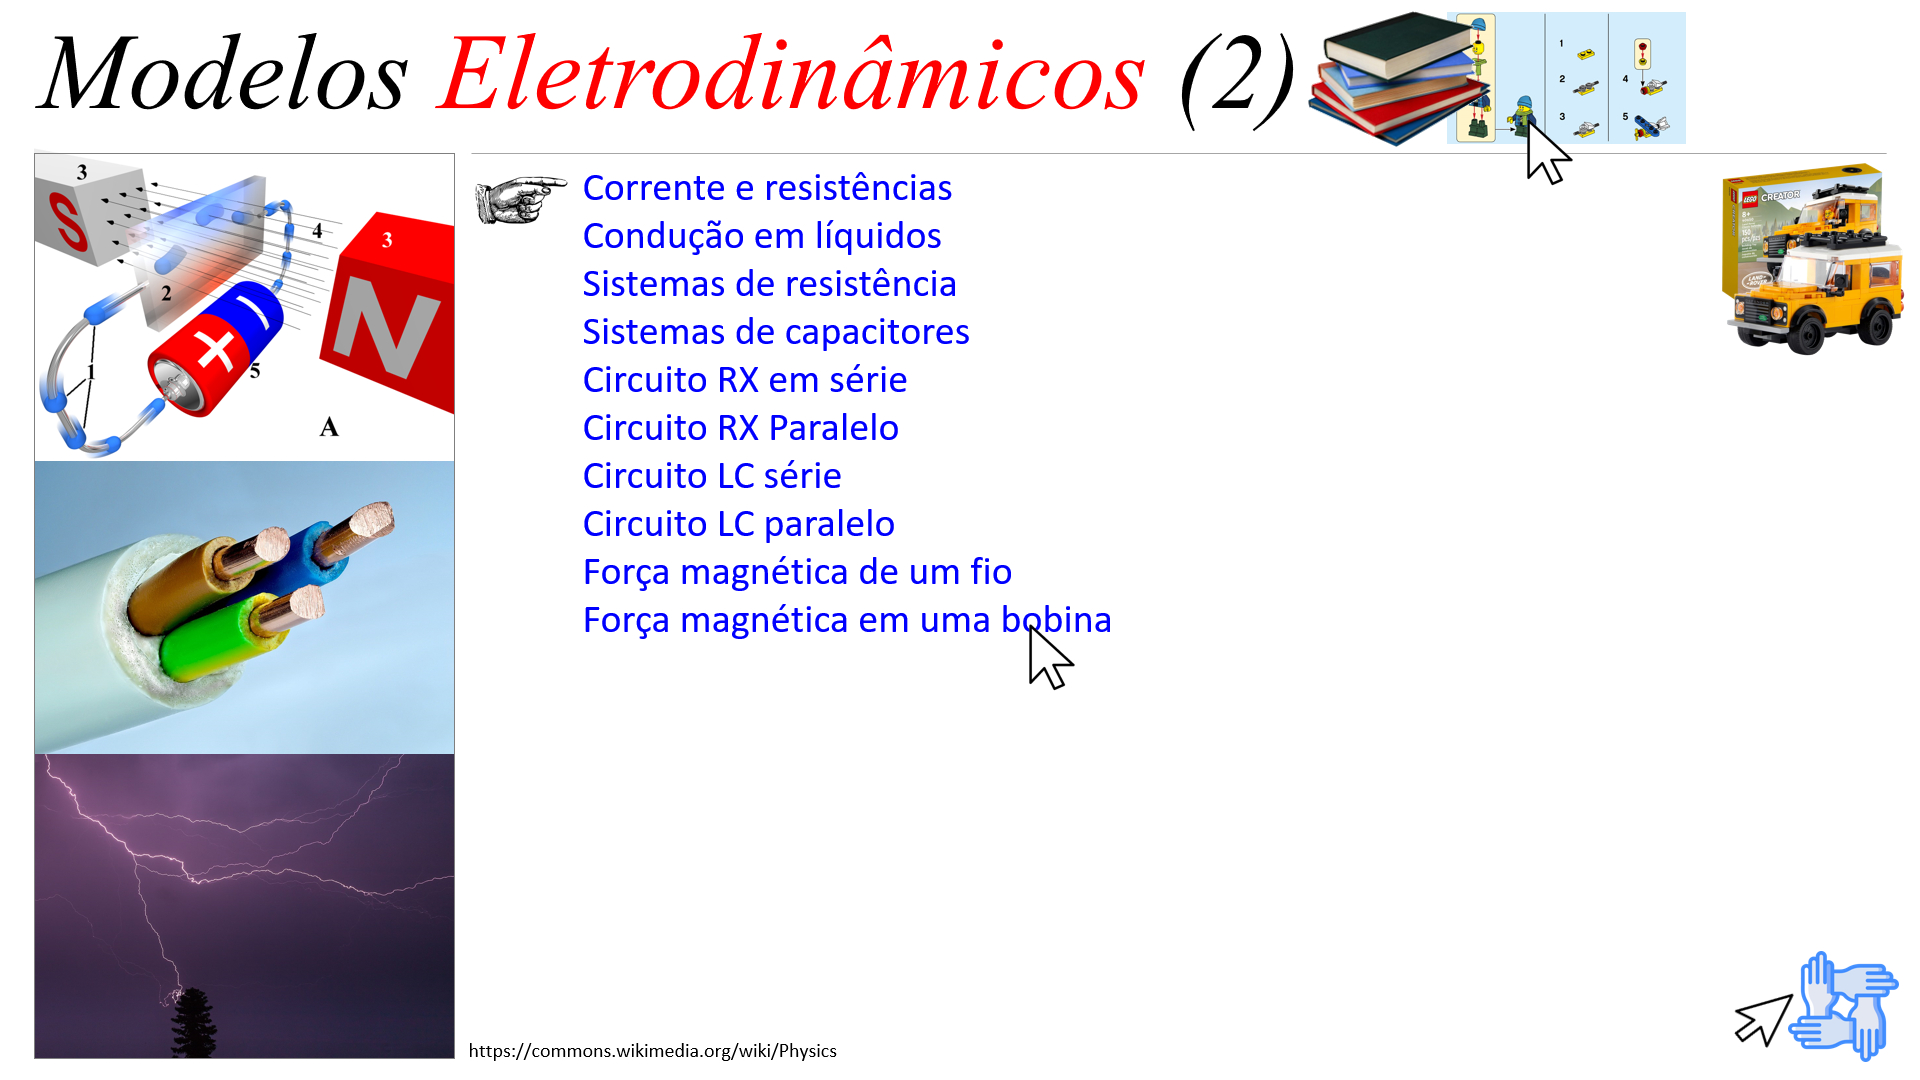 Modelos Eletrodinâmicos (2)